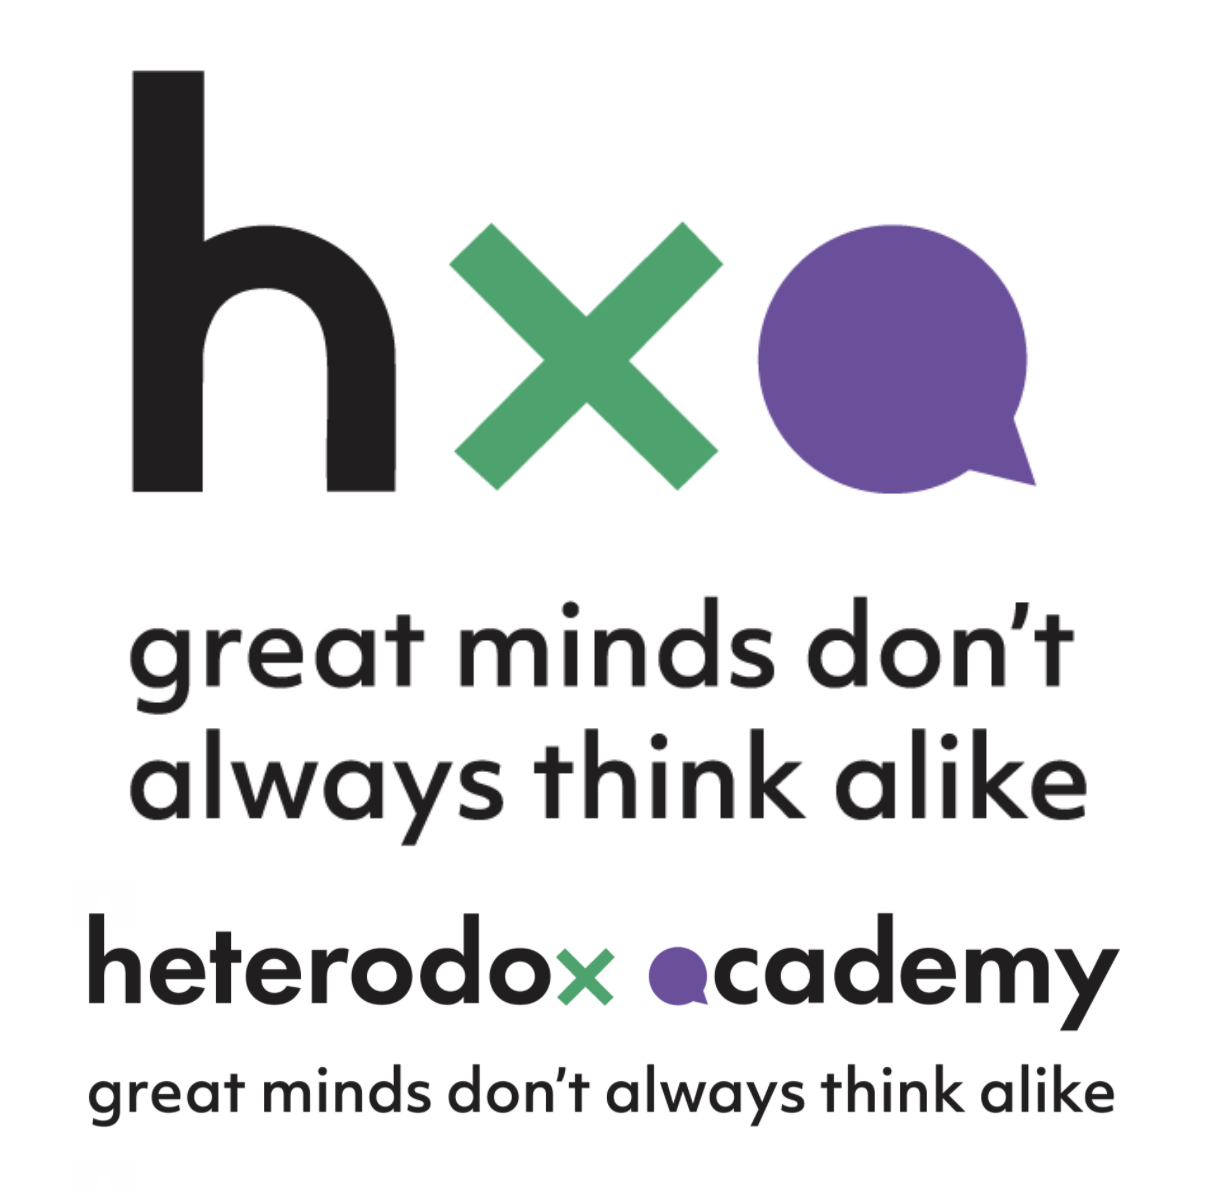 Heterodox Academy